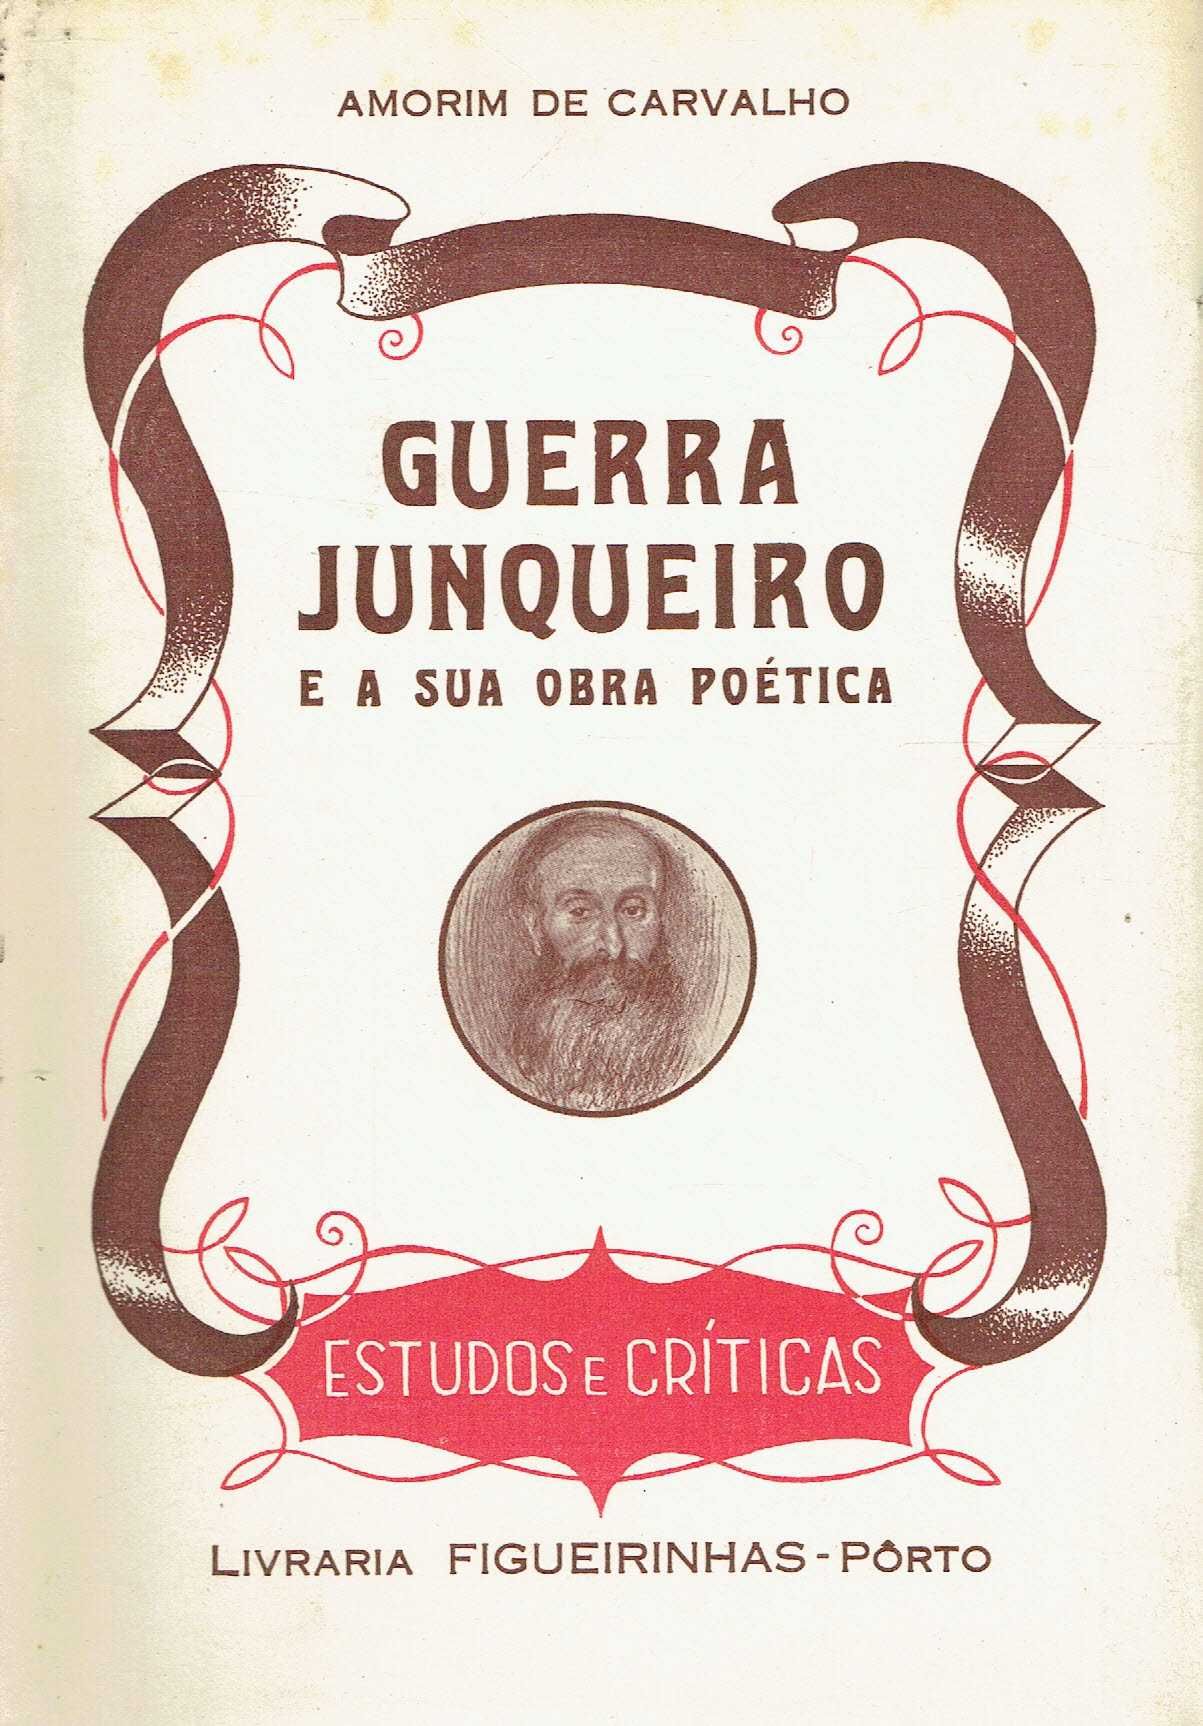 7382

Guerra Junqueiro e a sua obra poética 
de Amorim de Carvalho.